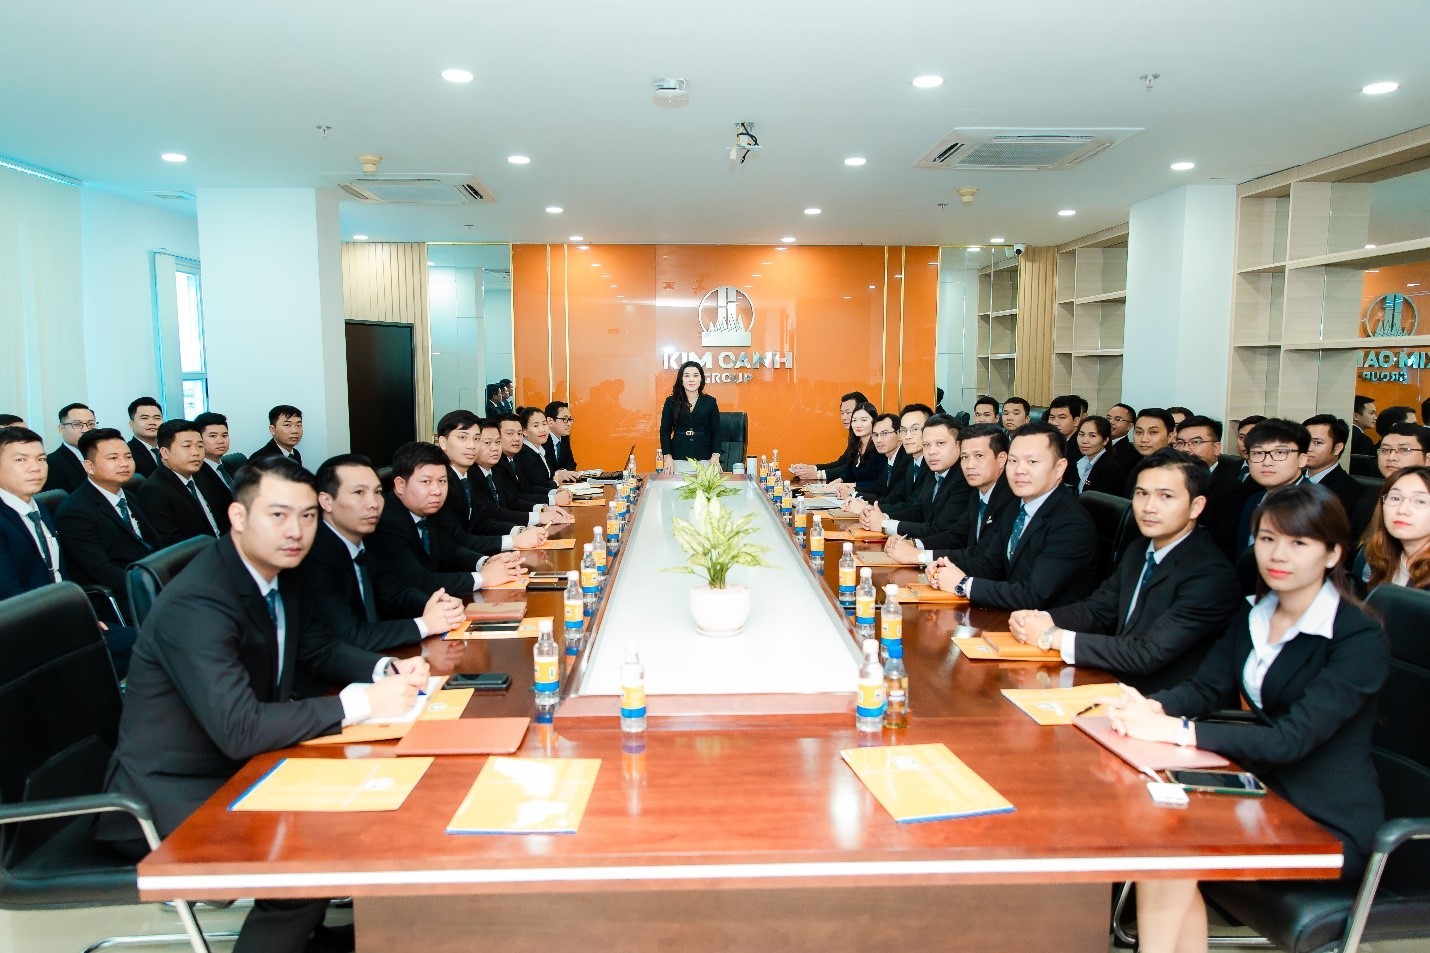 
Đội ngũ nhân sự chuyên nghiệp của Công ty cổ phần địa ốc Kim Oanh
